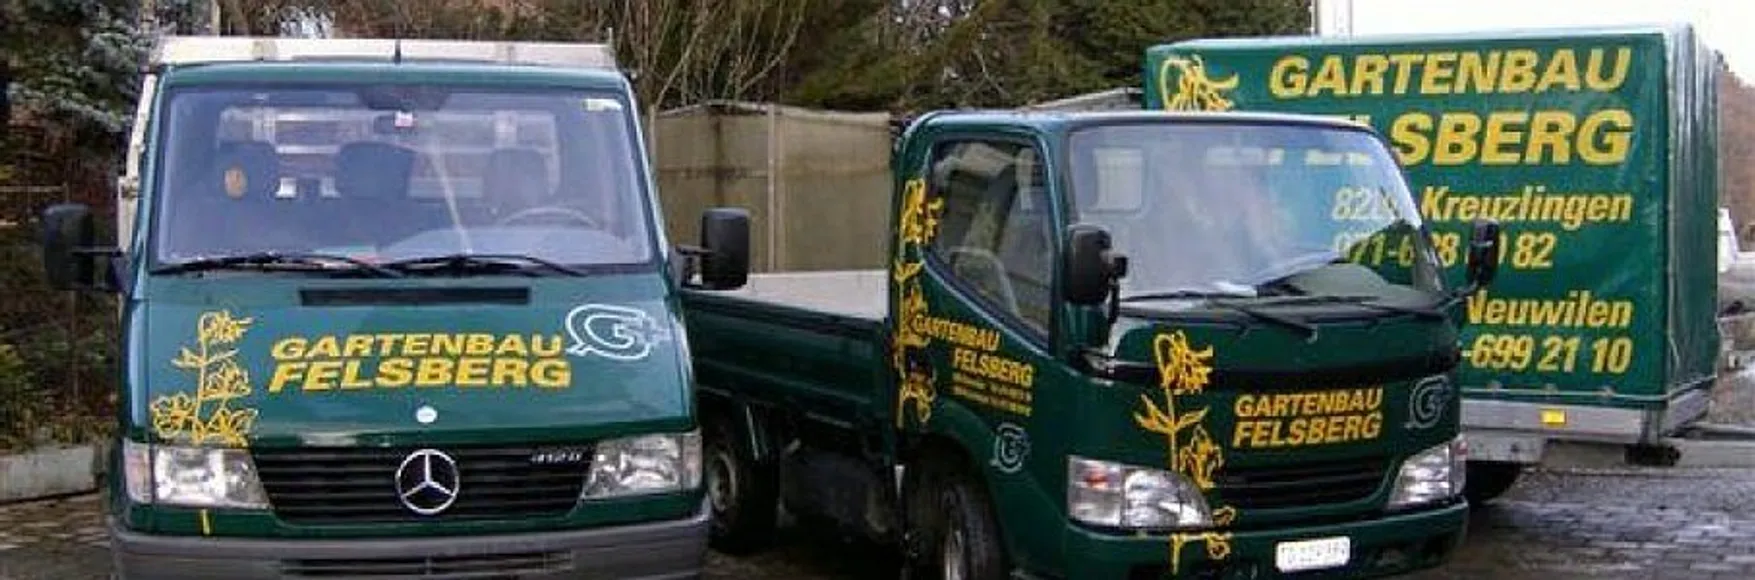 Zwei Lastwagen und ein Anhänger auf denen das Firmenlogo von Gartenbau Felsberg abgedruckt sind